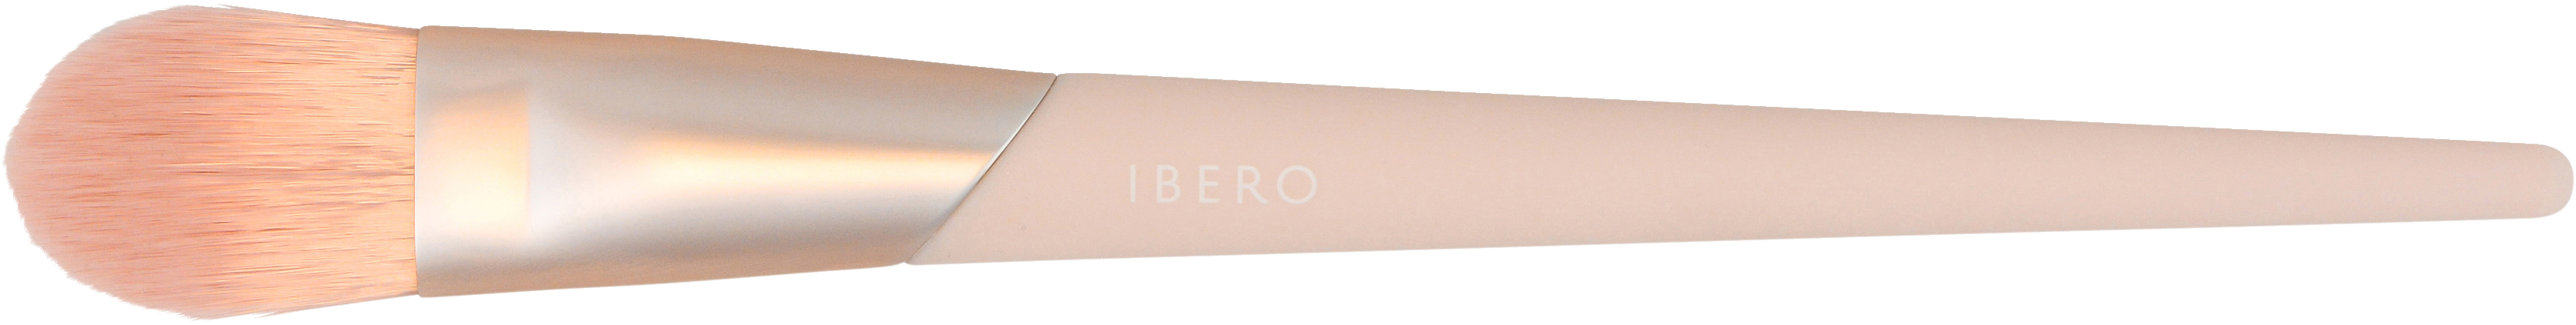 Ibero sivellin meikkivoide vaaleanpunainen 59082